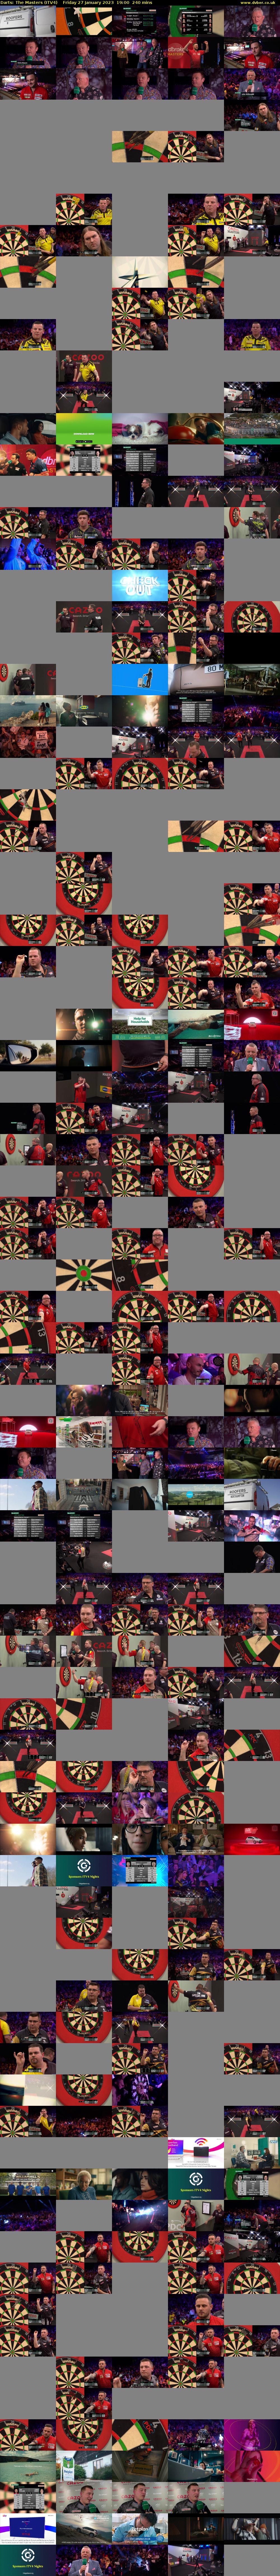 Darts: The Masters (ITV4) Friday 27 January 2023 19:00 - 23:00